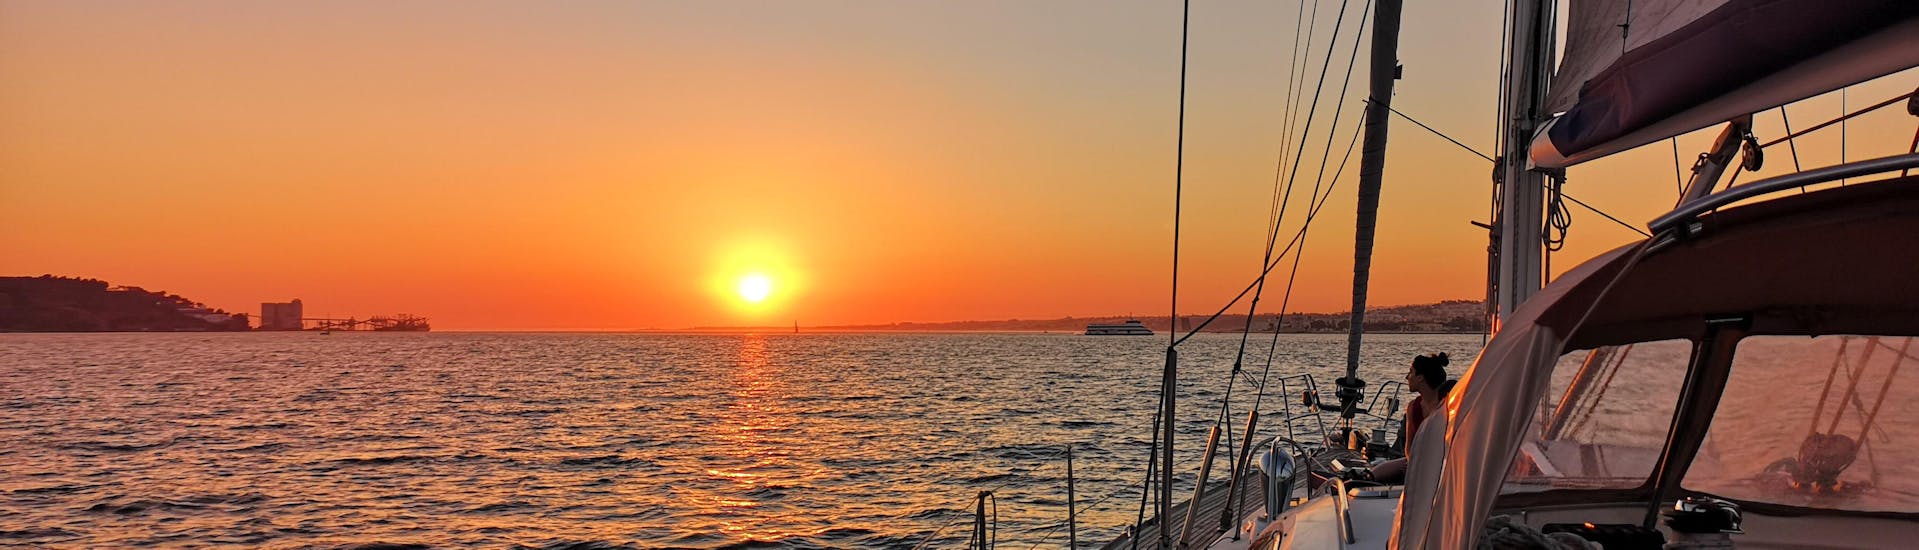 Beobachtung des Sonnenuntergangs während des Sunset Sailing Boat Trip auf dem Tejo